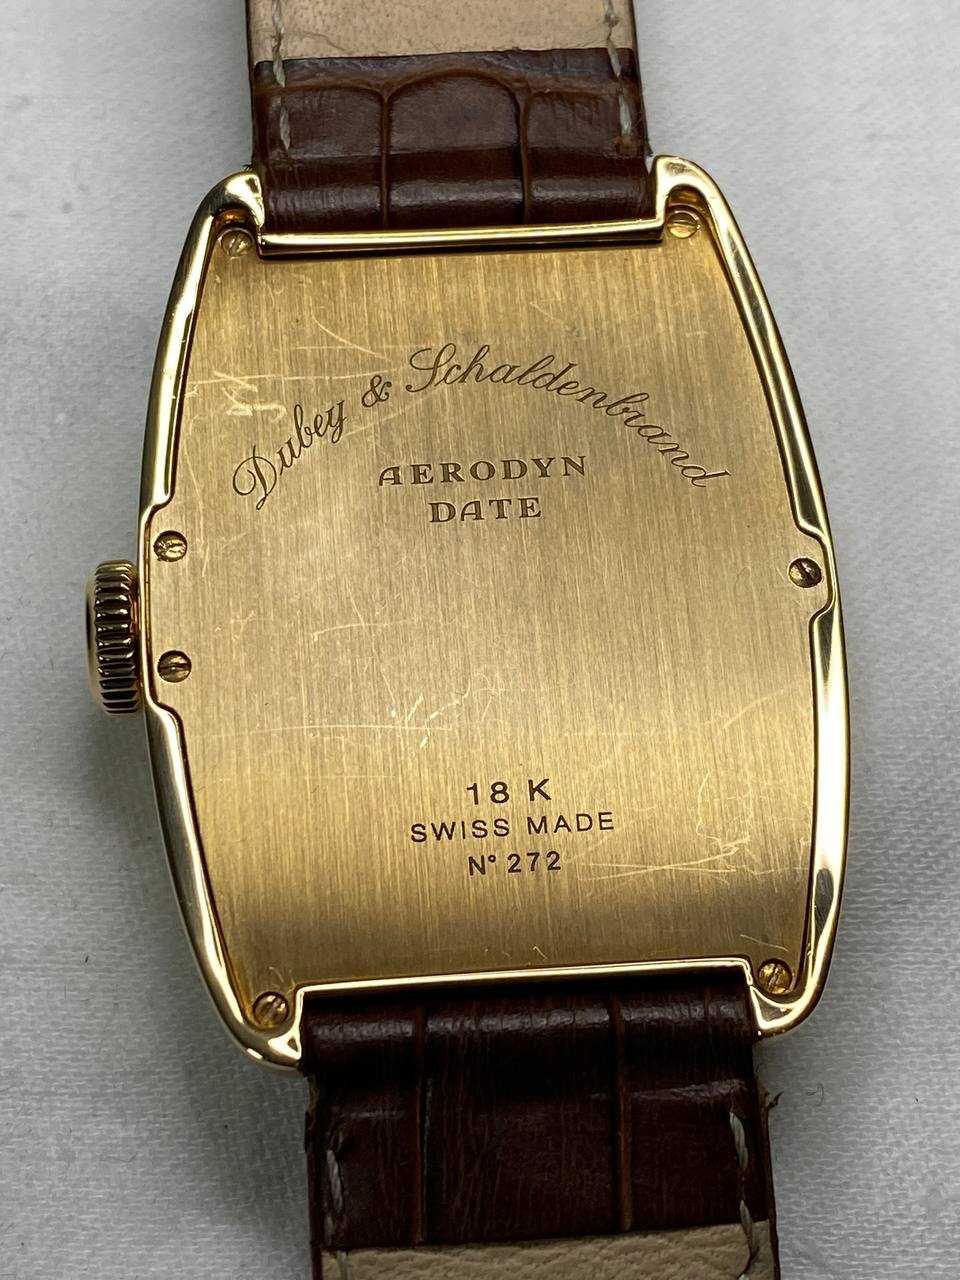 Золотые часы Dubey & Schaldenbrand Aerodyn Date